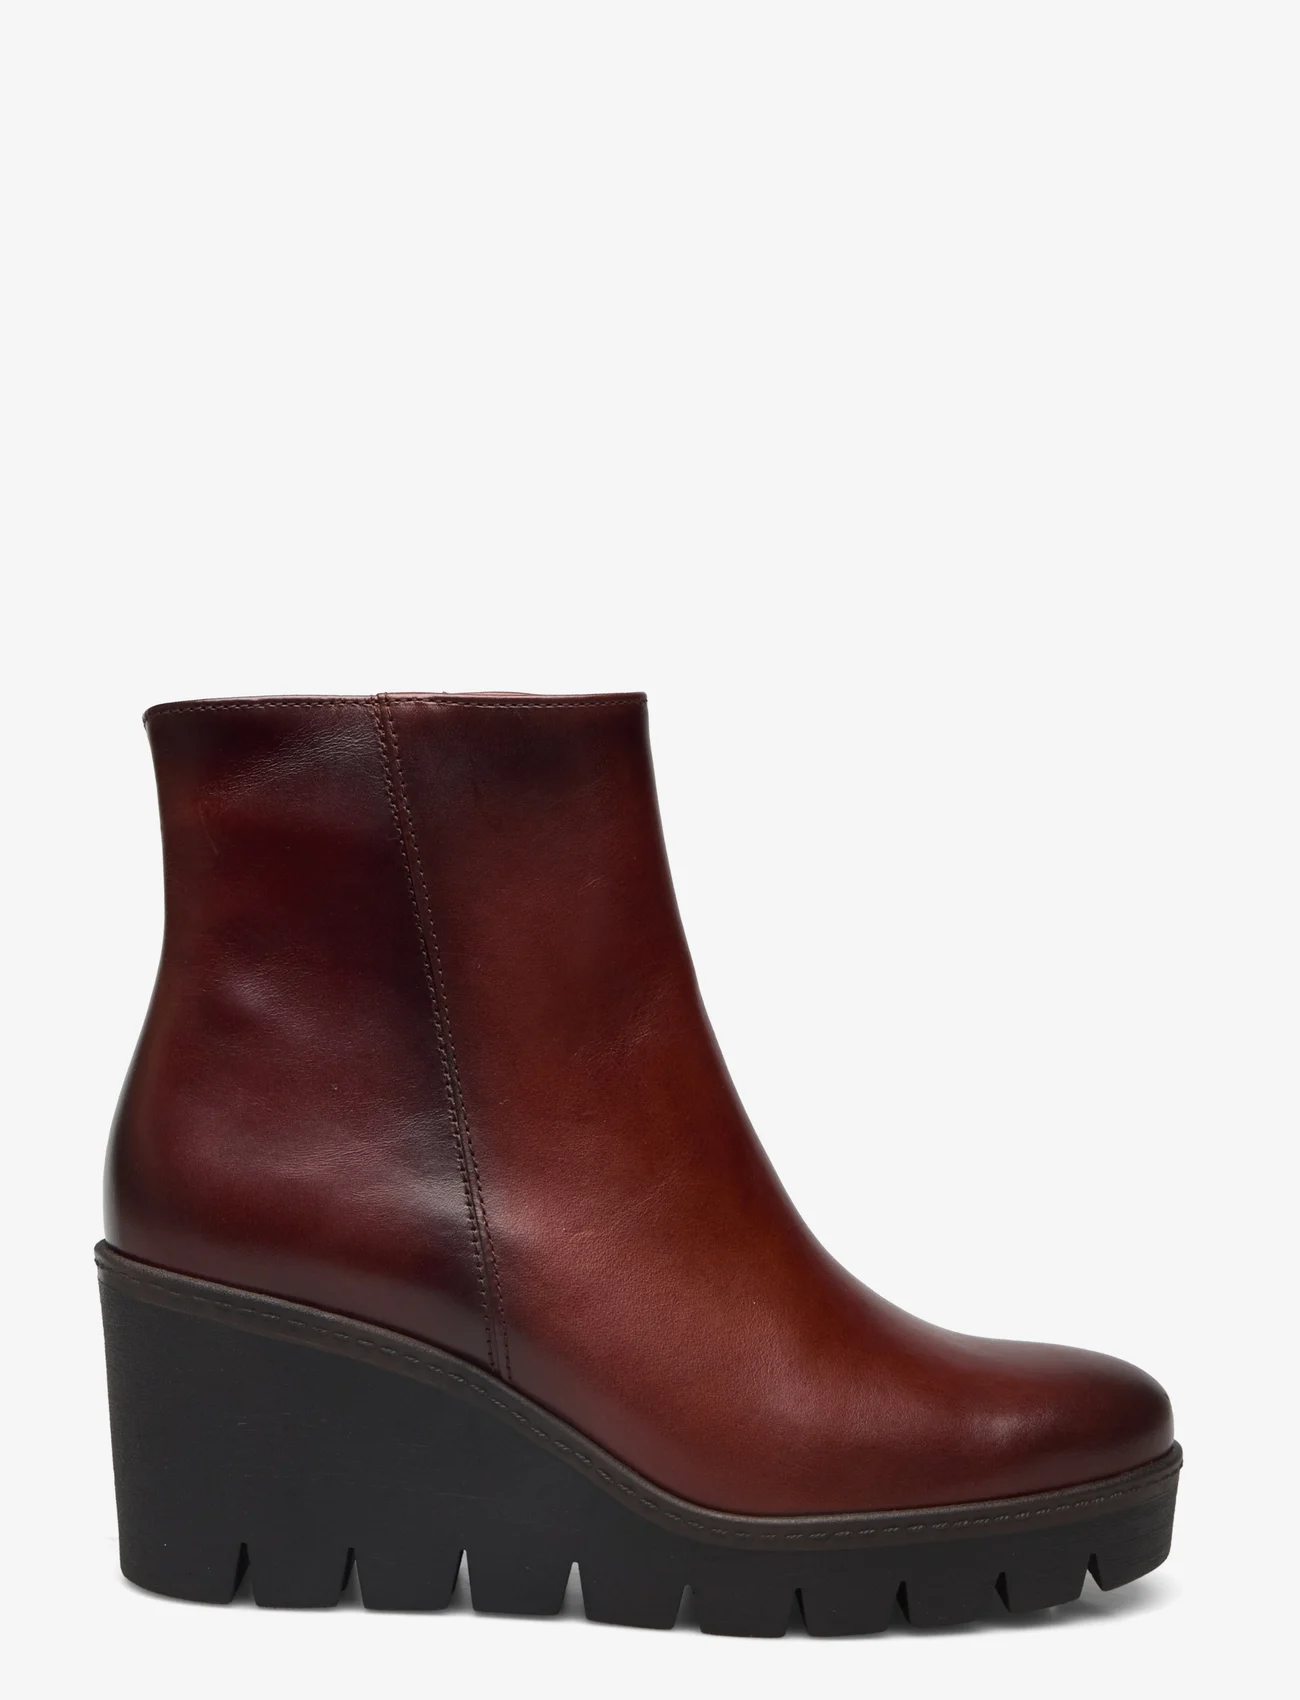 Gabor - Wedge ankle boot - høye hæler - brown - 1